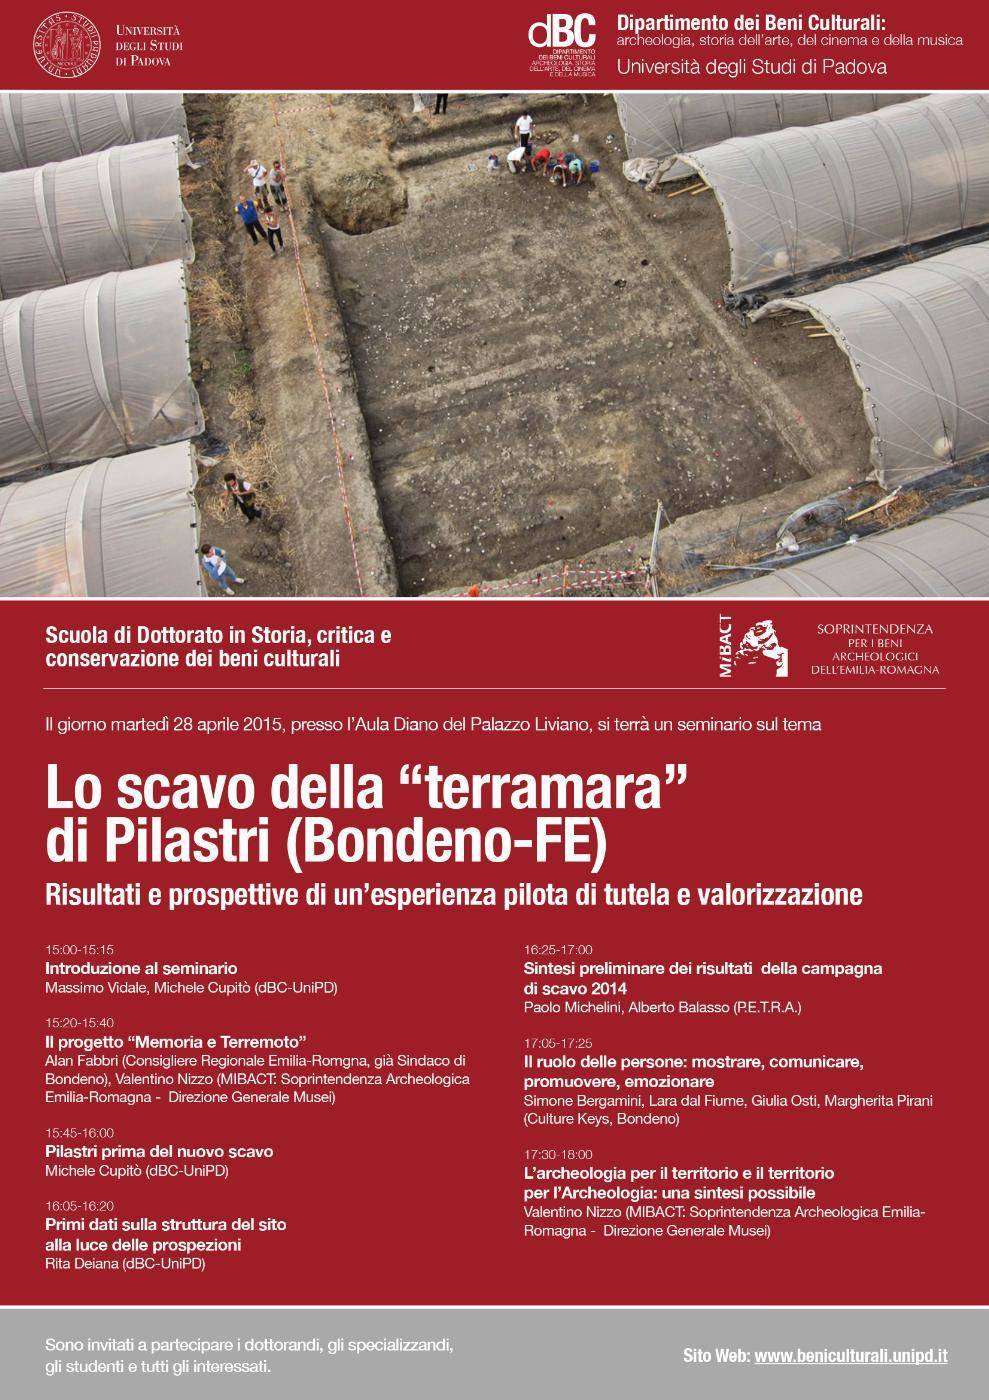  28 Aprile presentazione dello scavo della Terramara di Pilastri